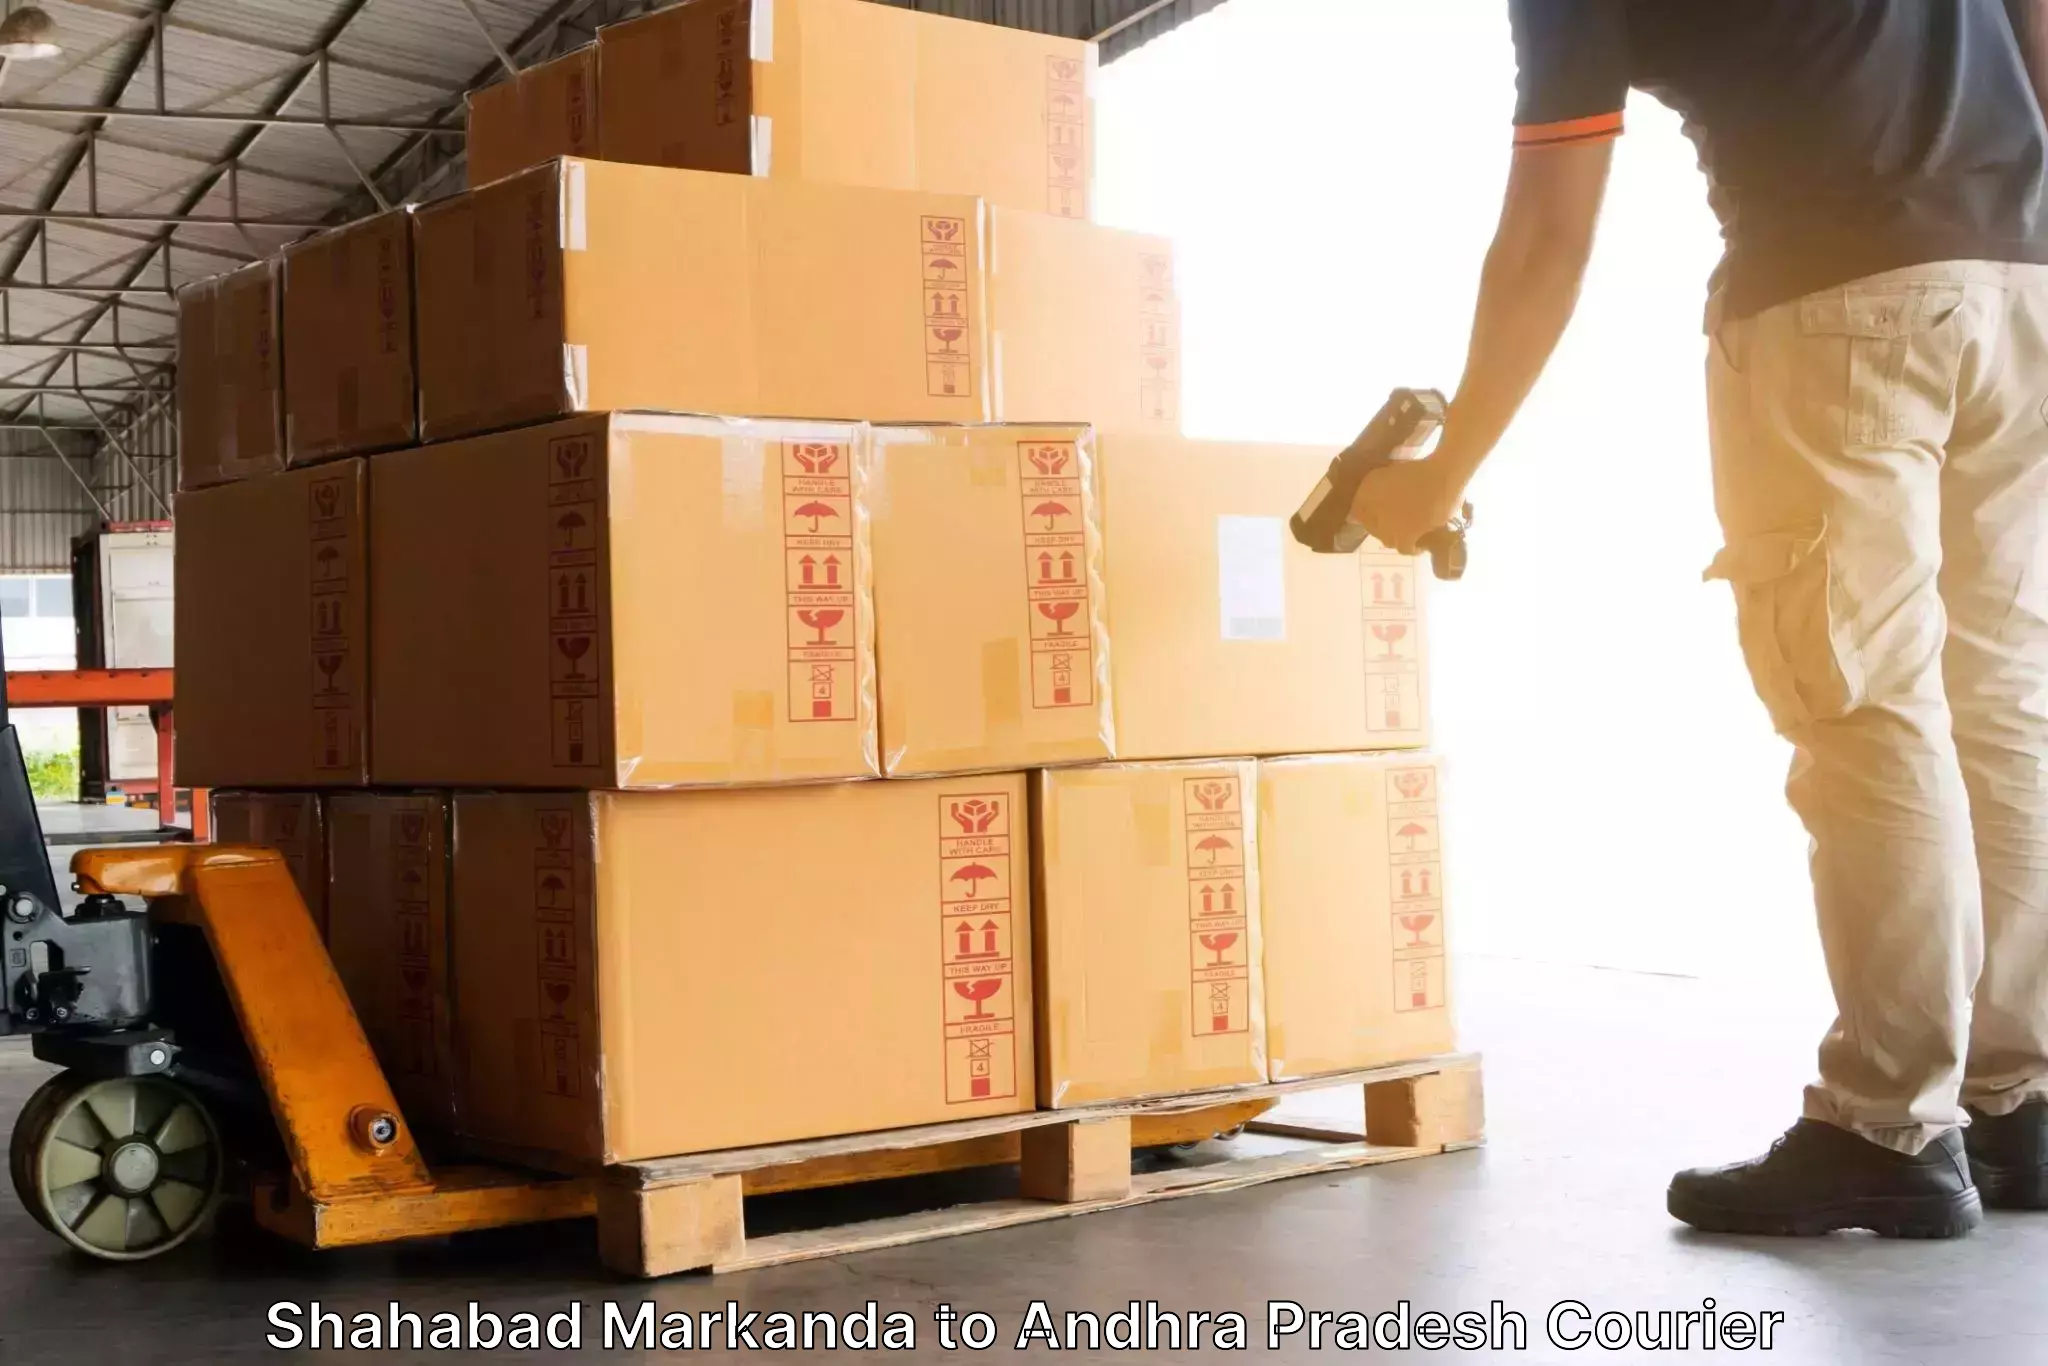 Sustainable delivery practices Shahabad Markanda to Yerragondapalem